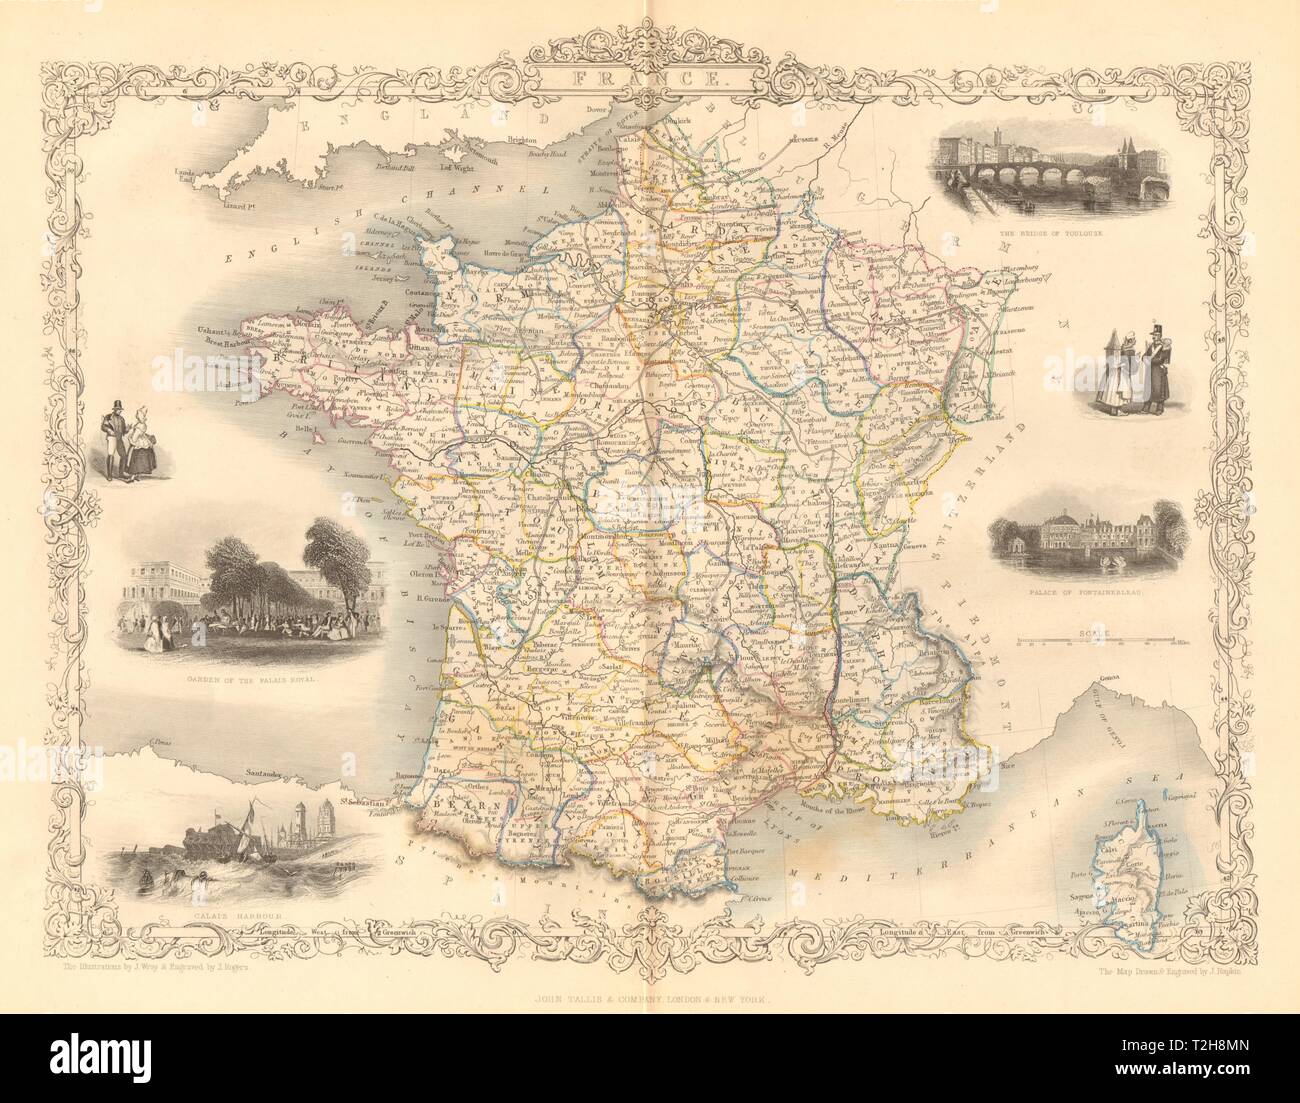 Frankreich. Provinzen. Ohne Comté de Nice & Savoy/Savoie. RAPKIN/TALLIS C 1855-Karte Stockfoto